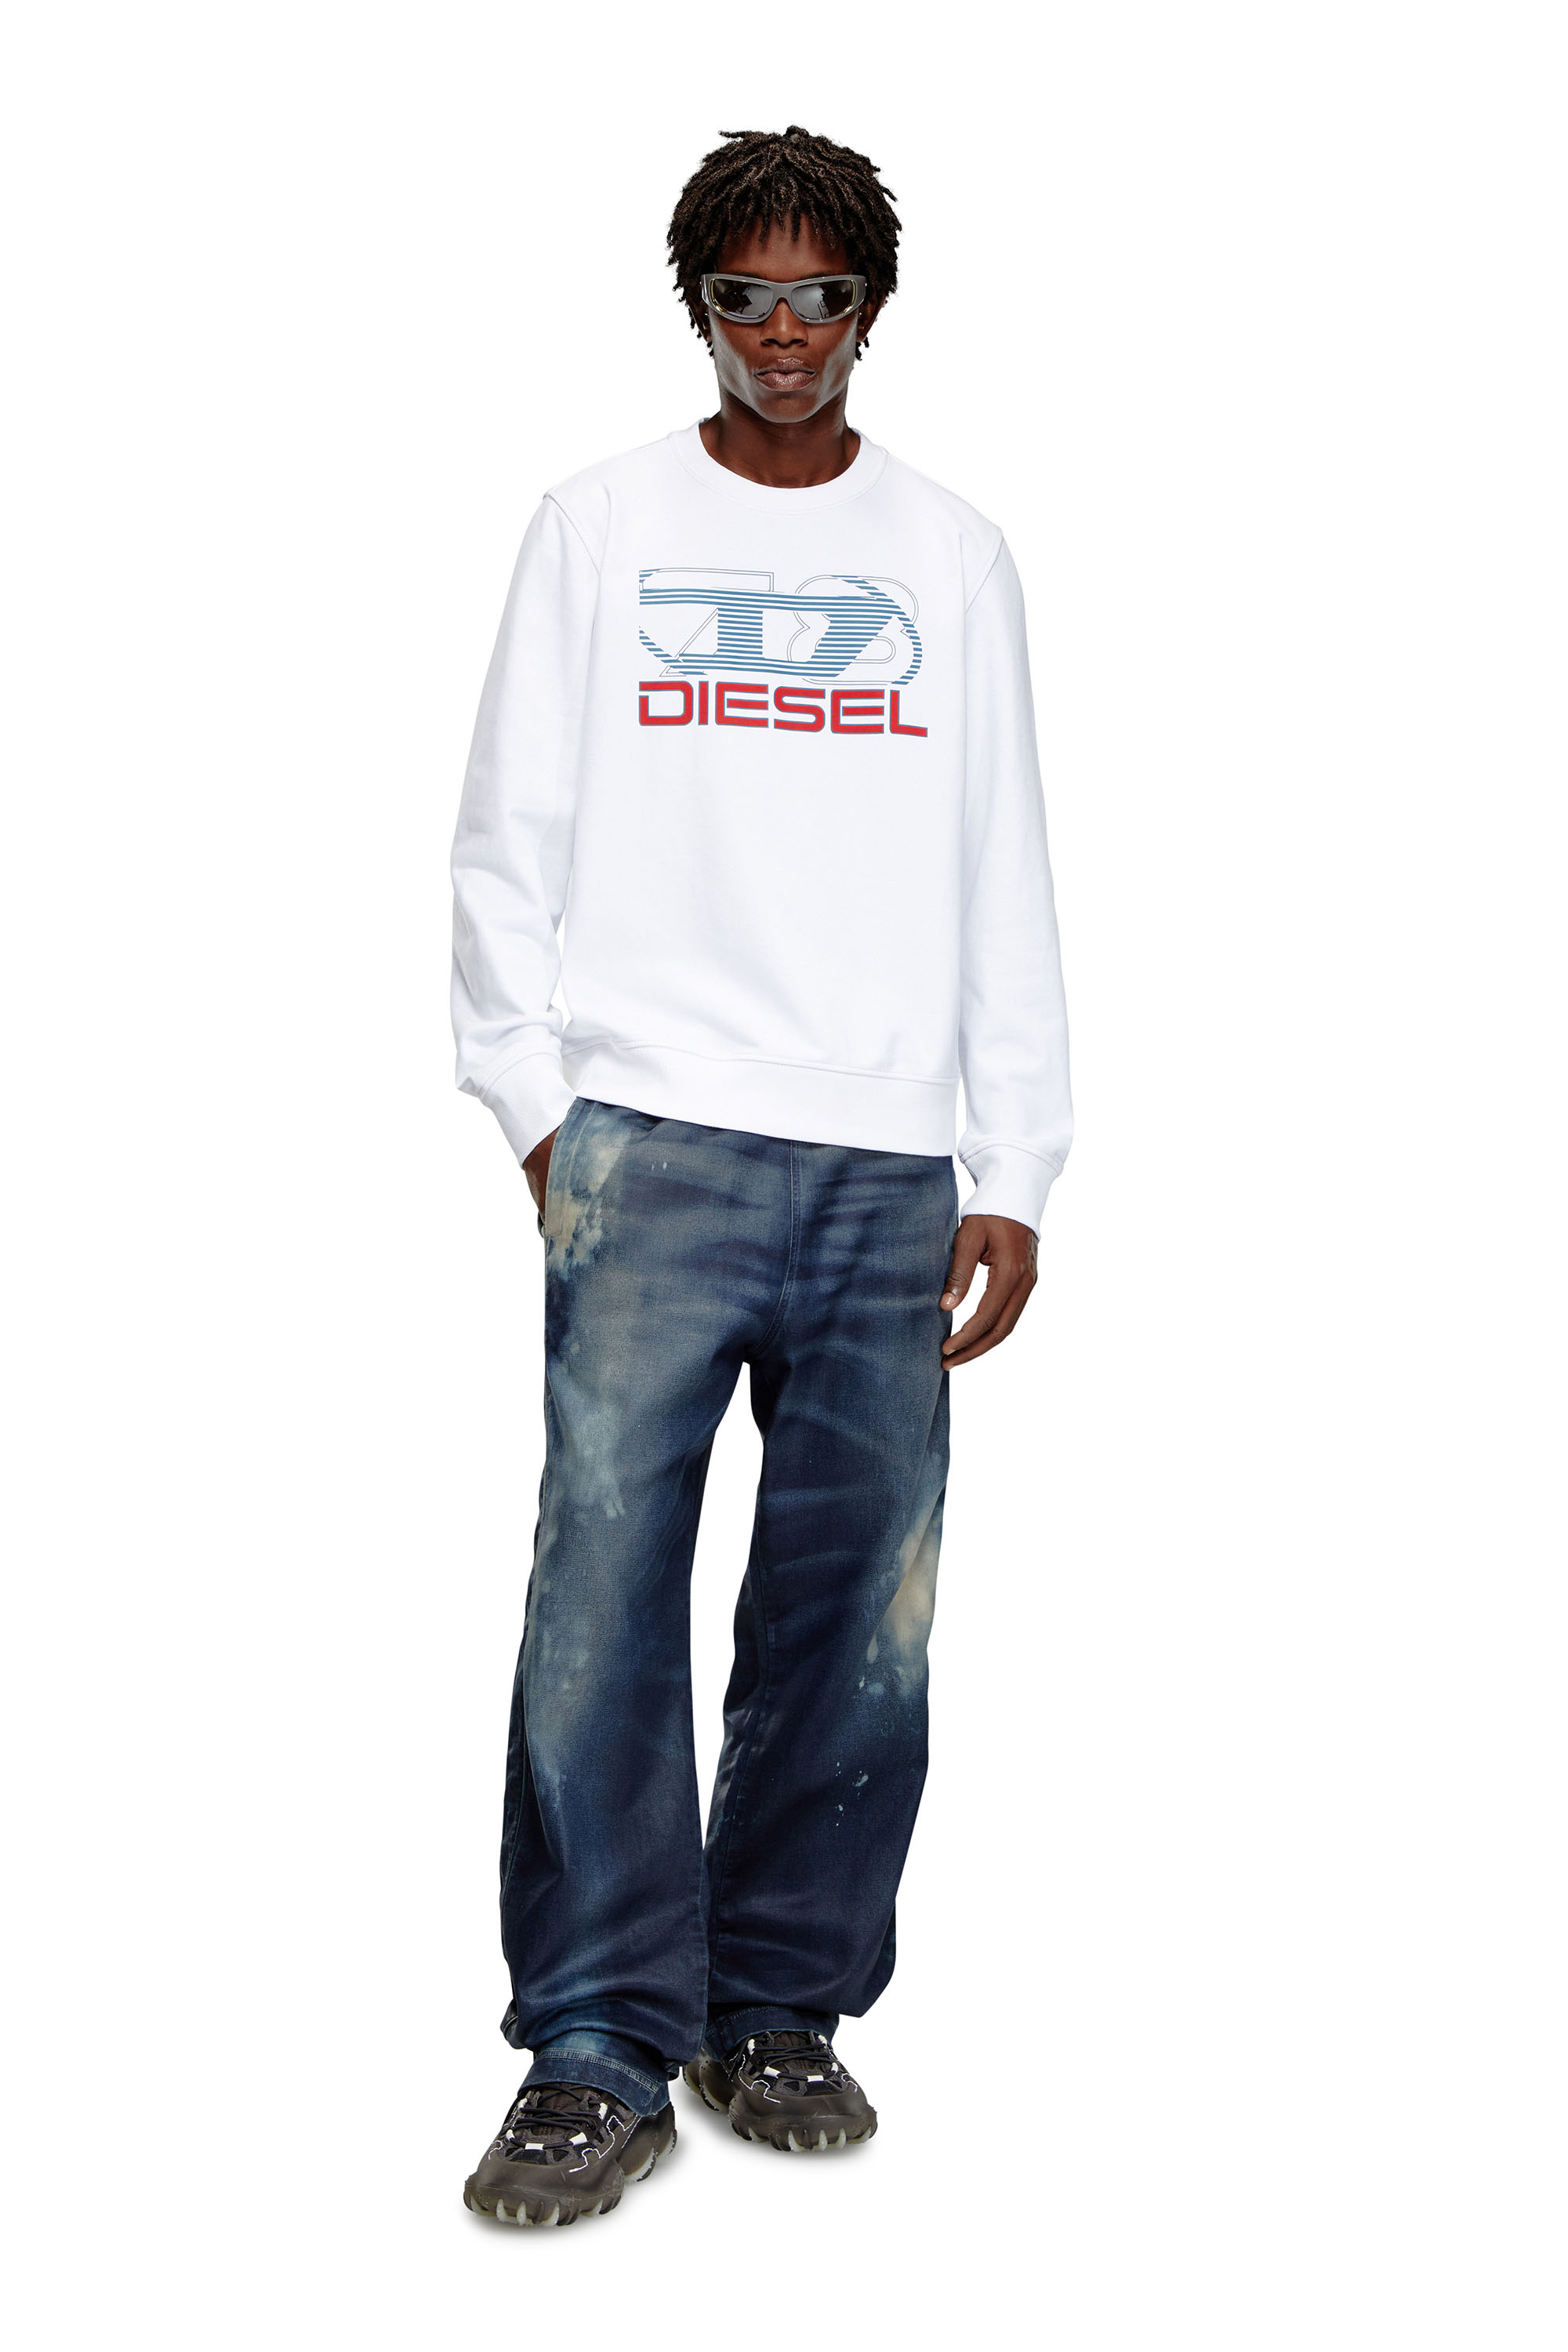 Diesel - S-GINN-K43, Herren Sweatshirt mit Logo-Print in Weiss - Image 2